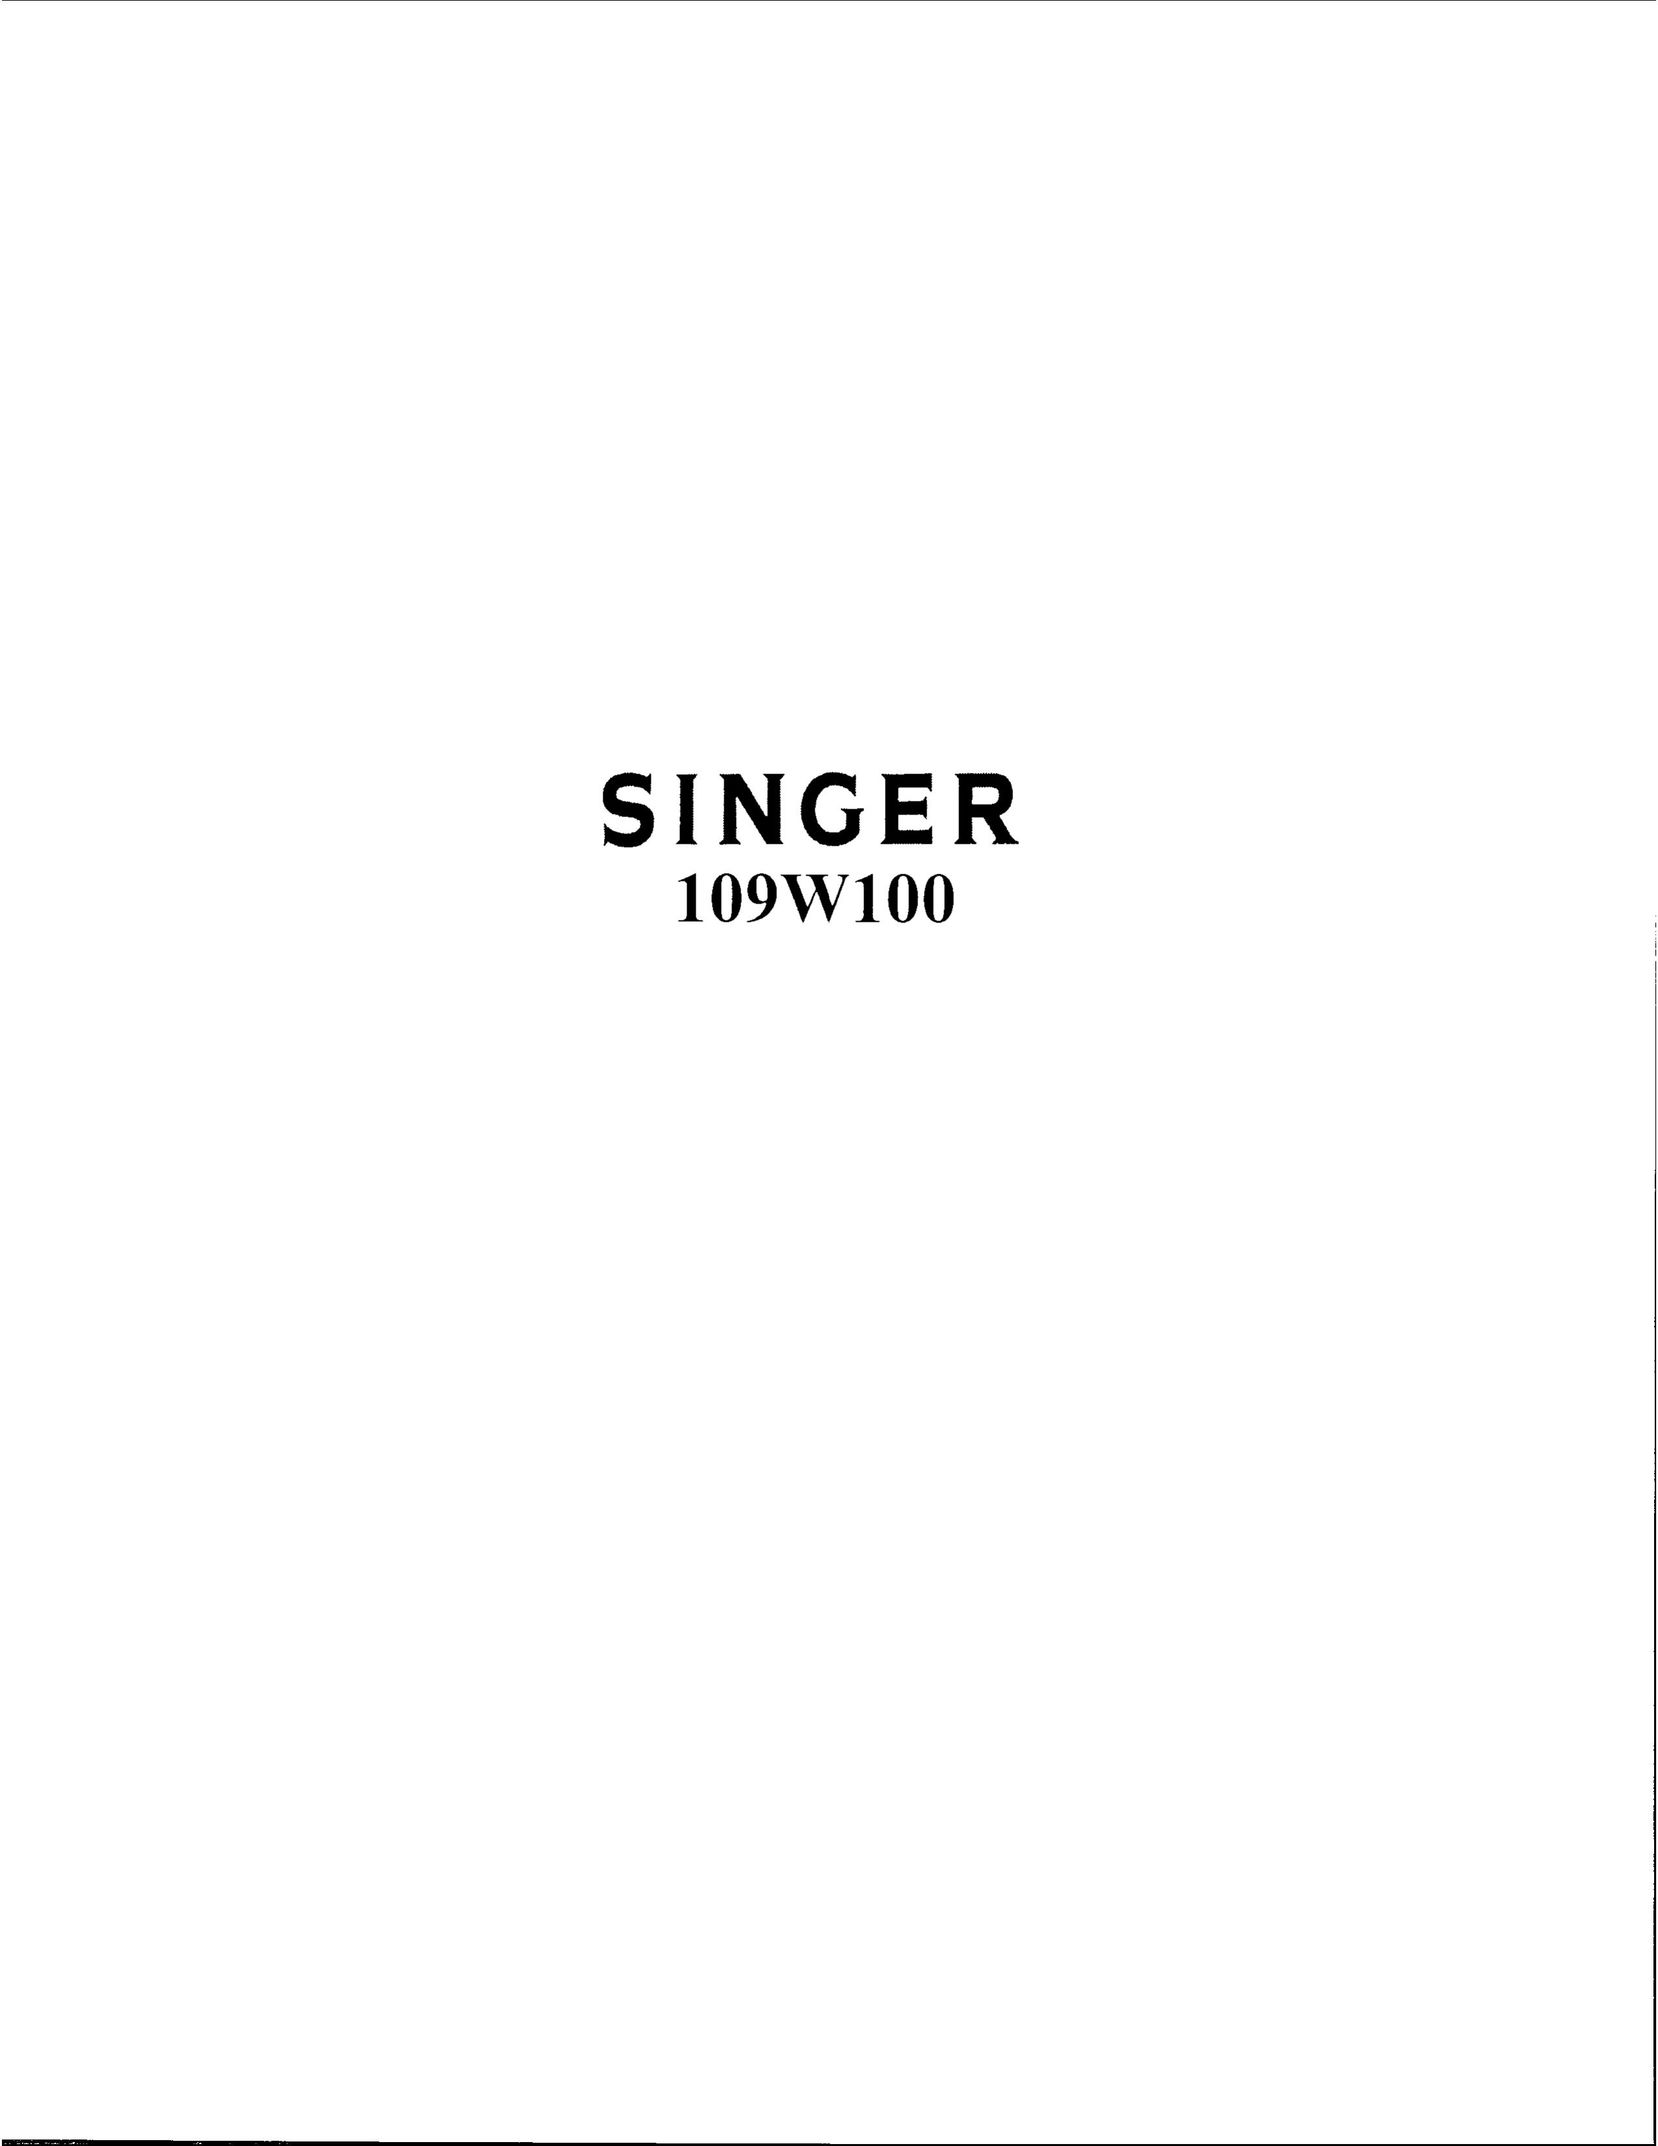 Singer 109W100 Sewing Machine User Manual